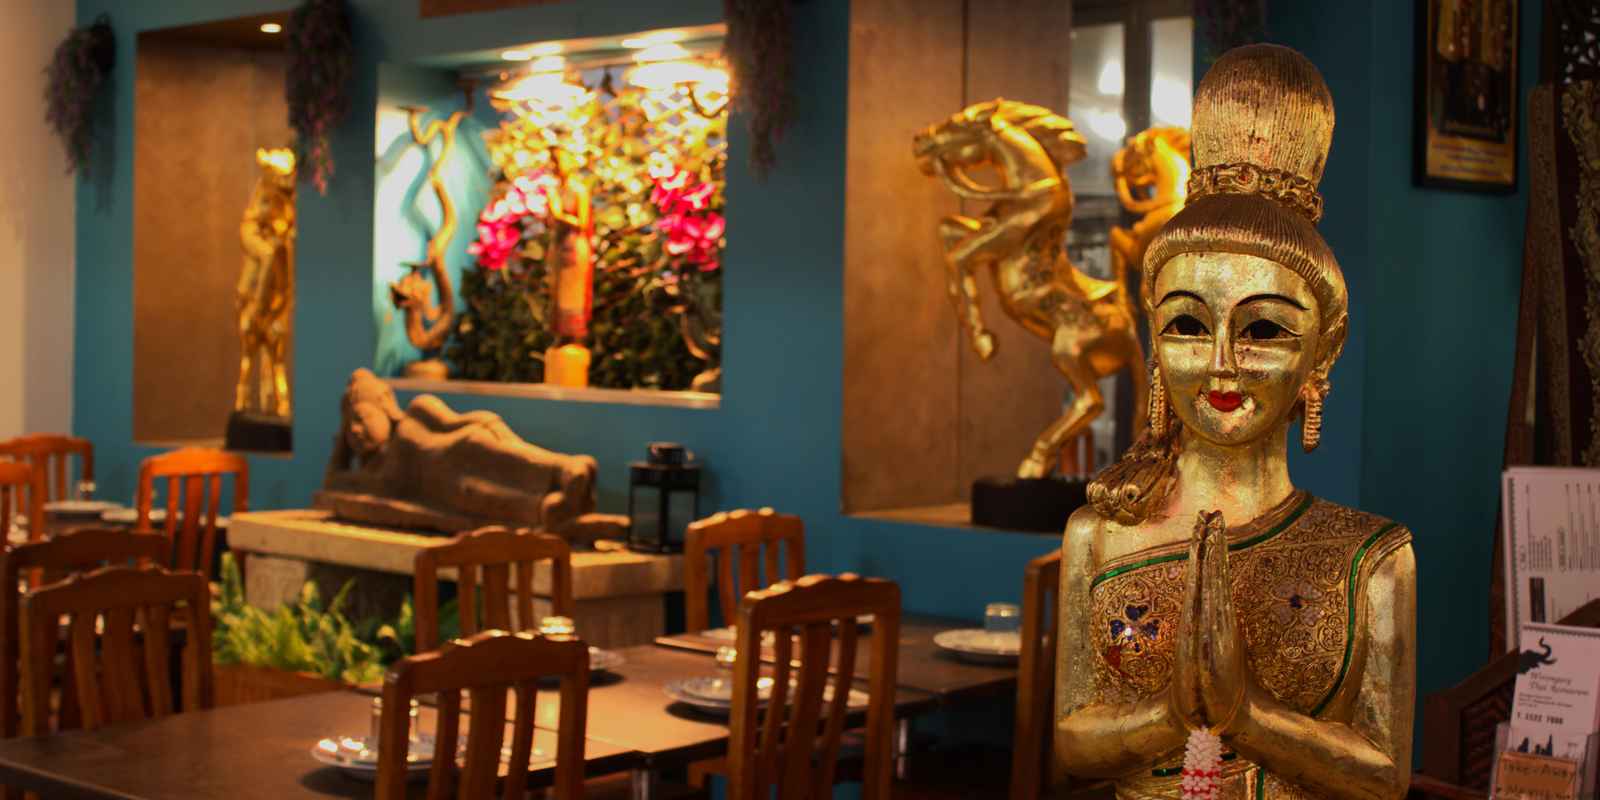 Worongary Thai Restaurant